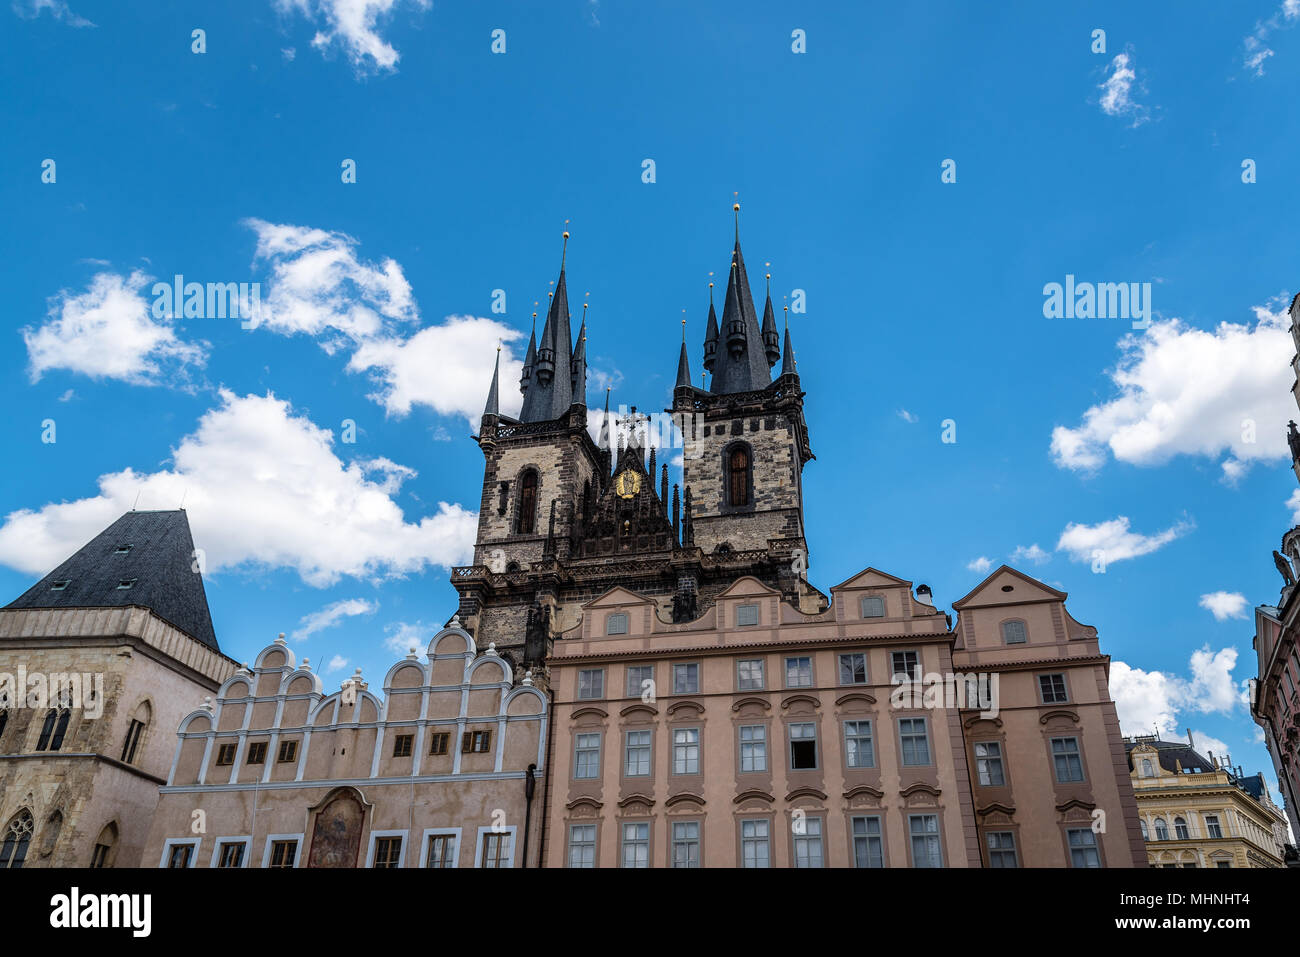 Praga, Repubblica Ceca - 20 agosto 2017: Chiesa di Nostra Signora di Tyn nel centro storico della città di Praga. Giornata di sole dell'estate con cielo blu Foto Stock